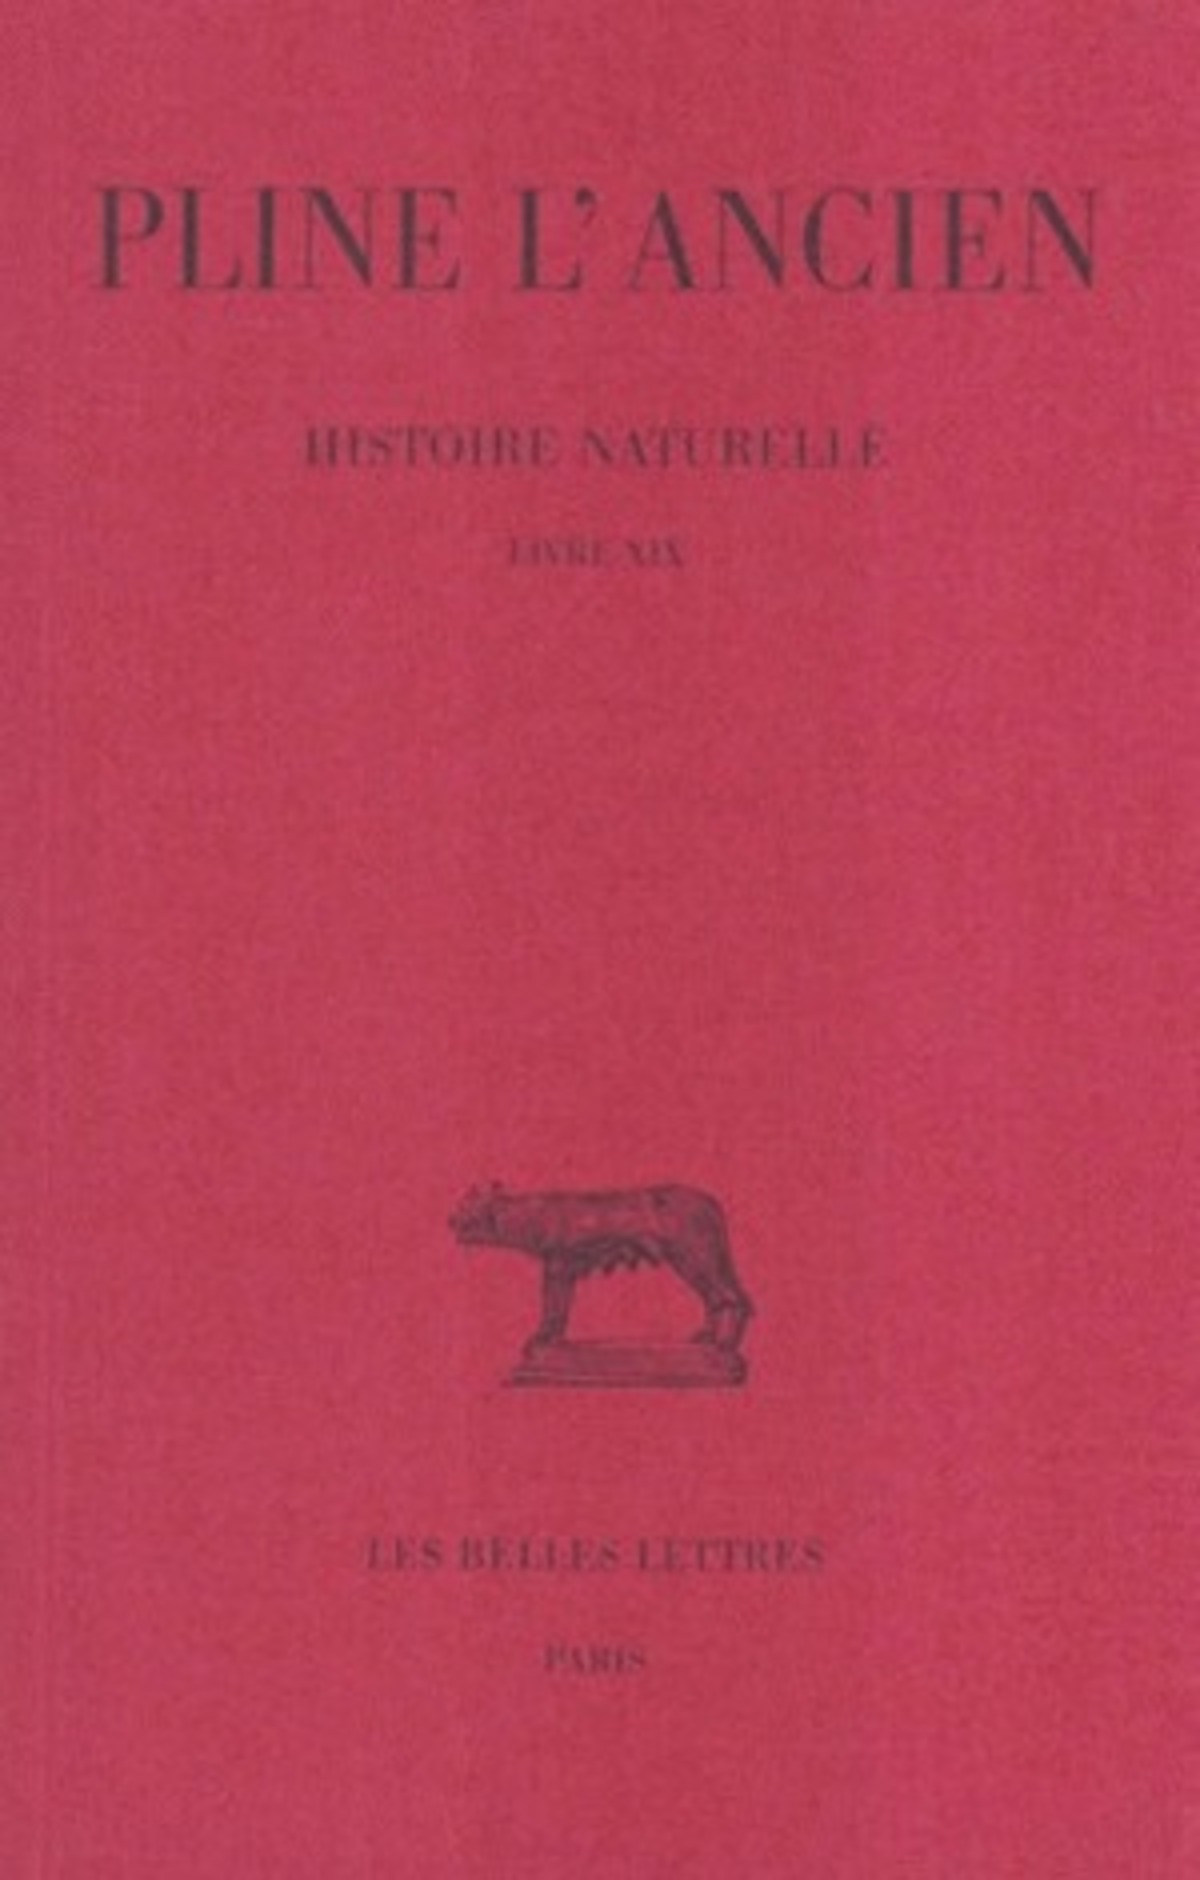 Histoire naturelle. Livre XIX